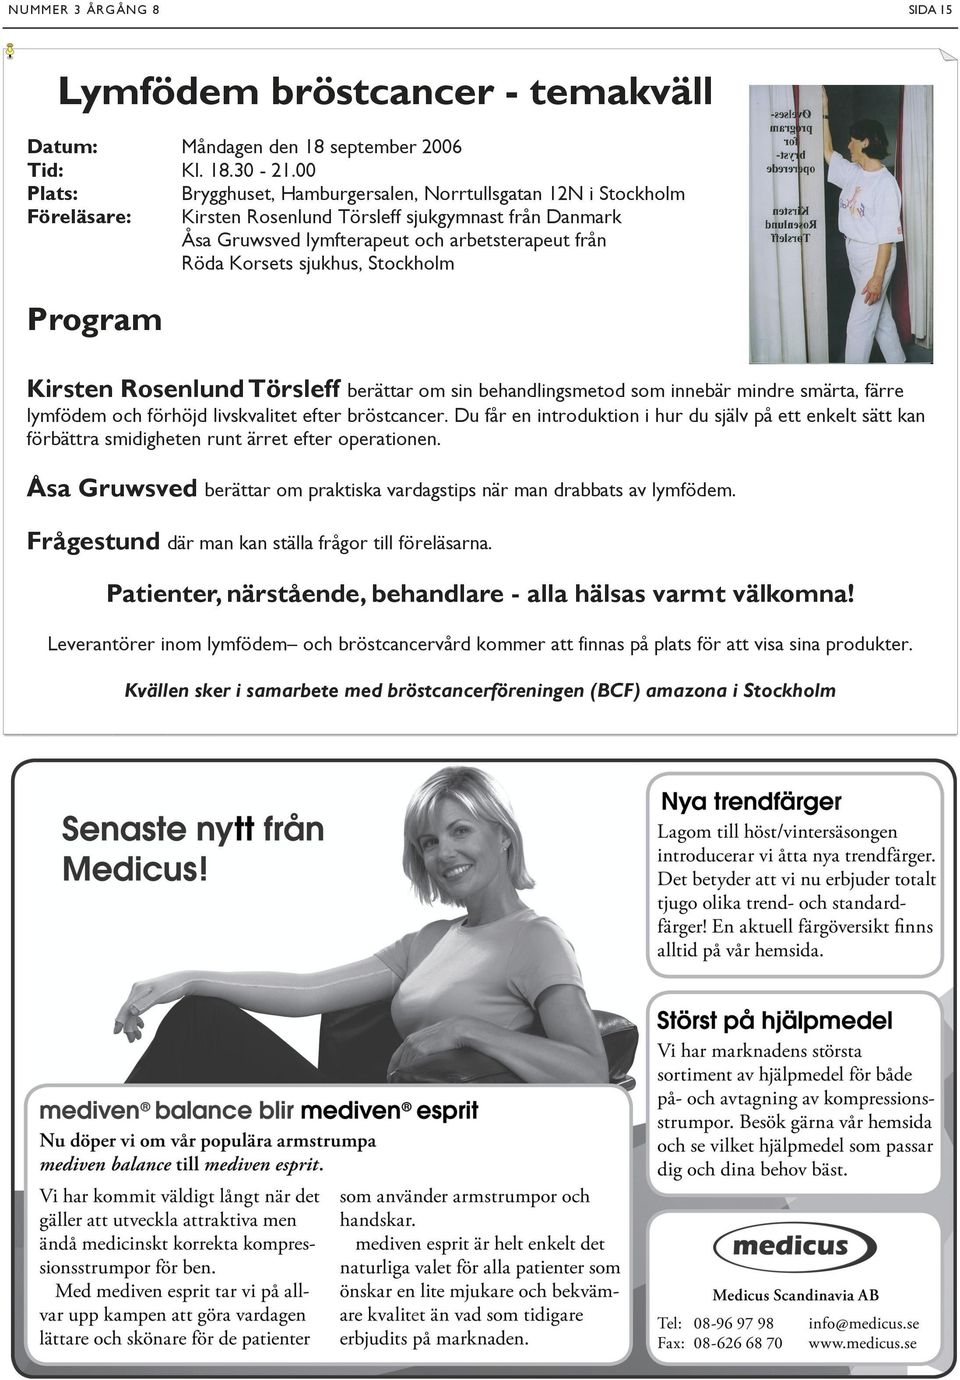 Program Kirsten Rosenlund Törsleff berättar om sin behandlingsmetod som innebär mindre smärta, färre lymfödem och förhöjd livskvalitet efter bröstcancer.